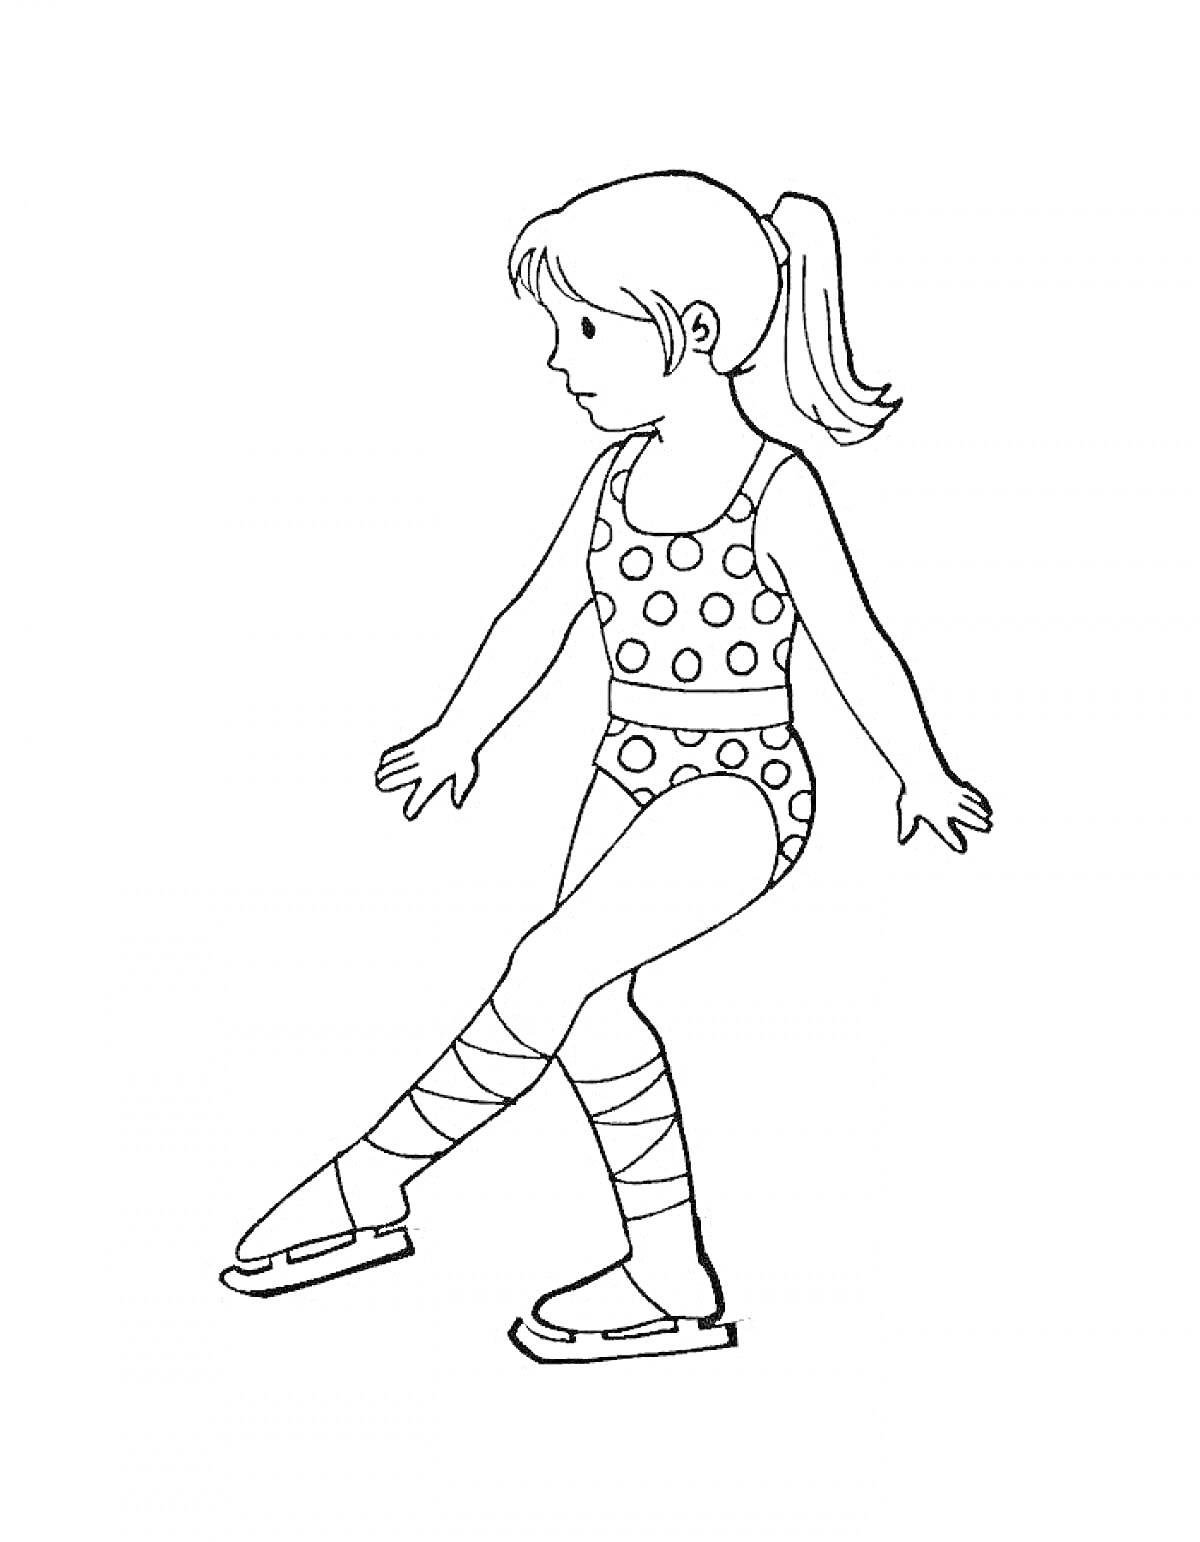 Раскраска Девочка на коньках в купальнике с горошком и лентами на ногах